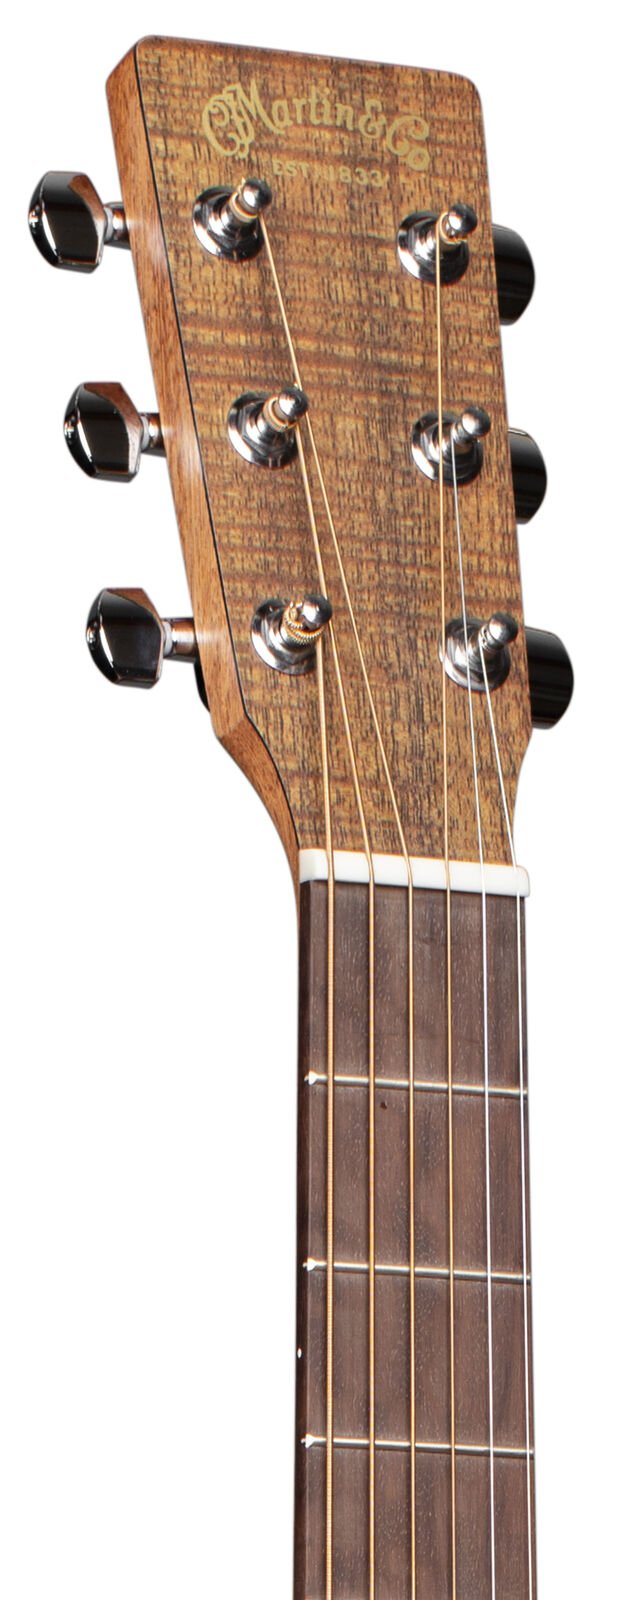 Martin D-X2E-1 Koa HPL Guitar w/Gig Bag